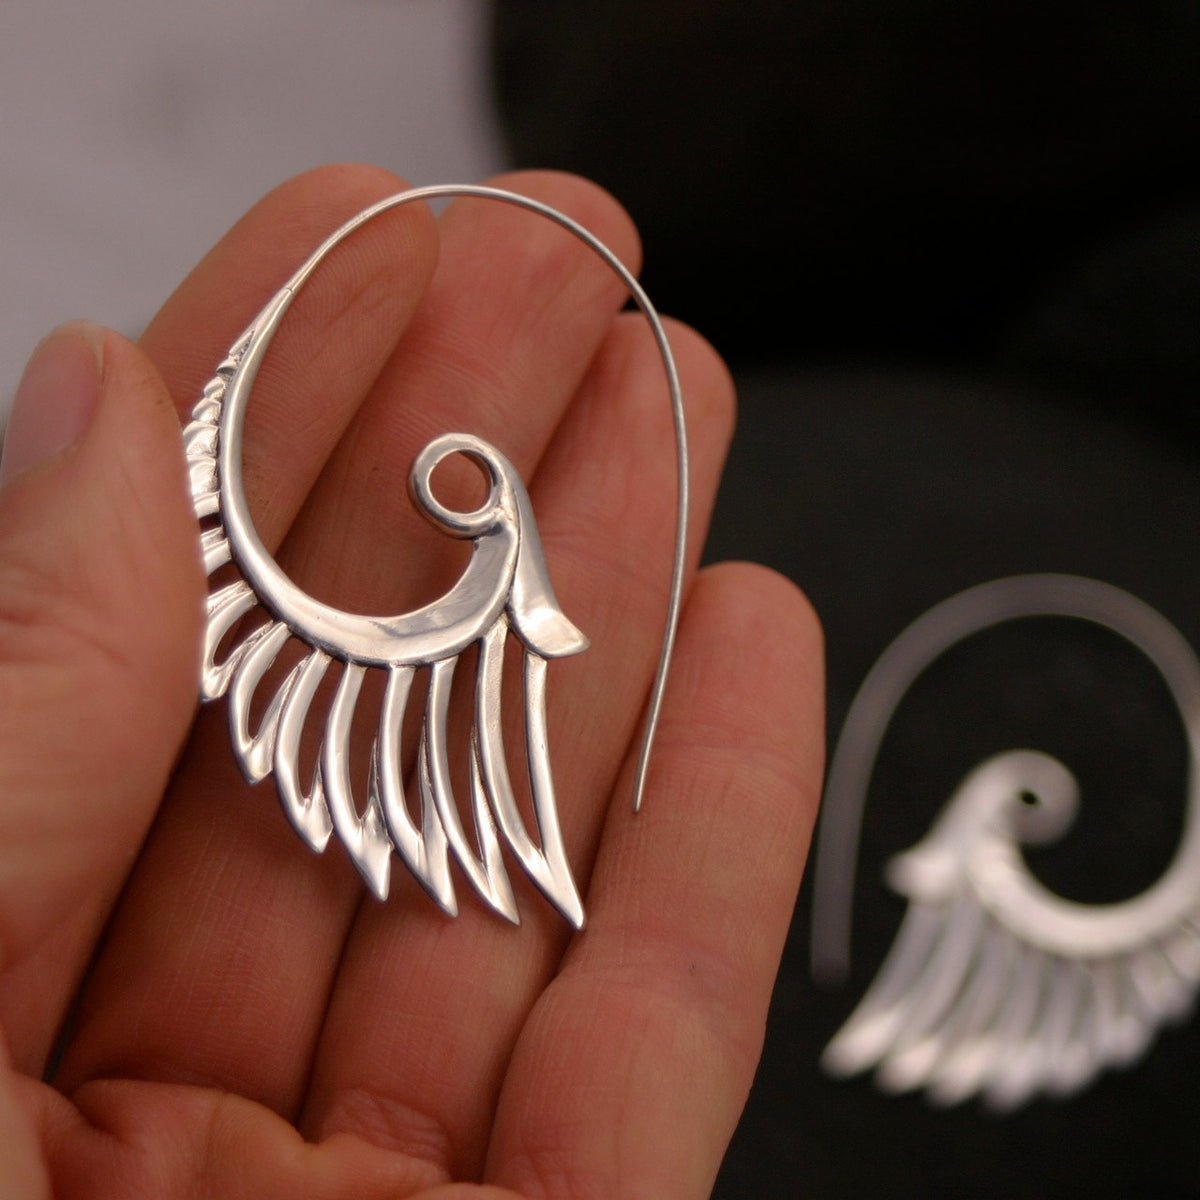 Large Feather Earrings - Silver - Statement Earrings - Bohemian earrings - Goddess